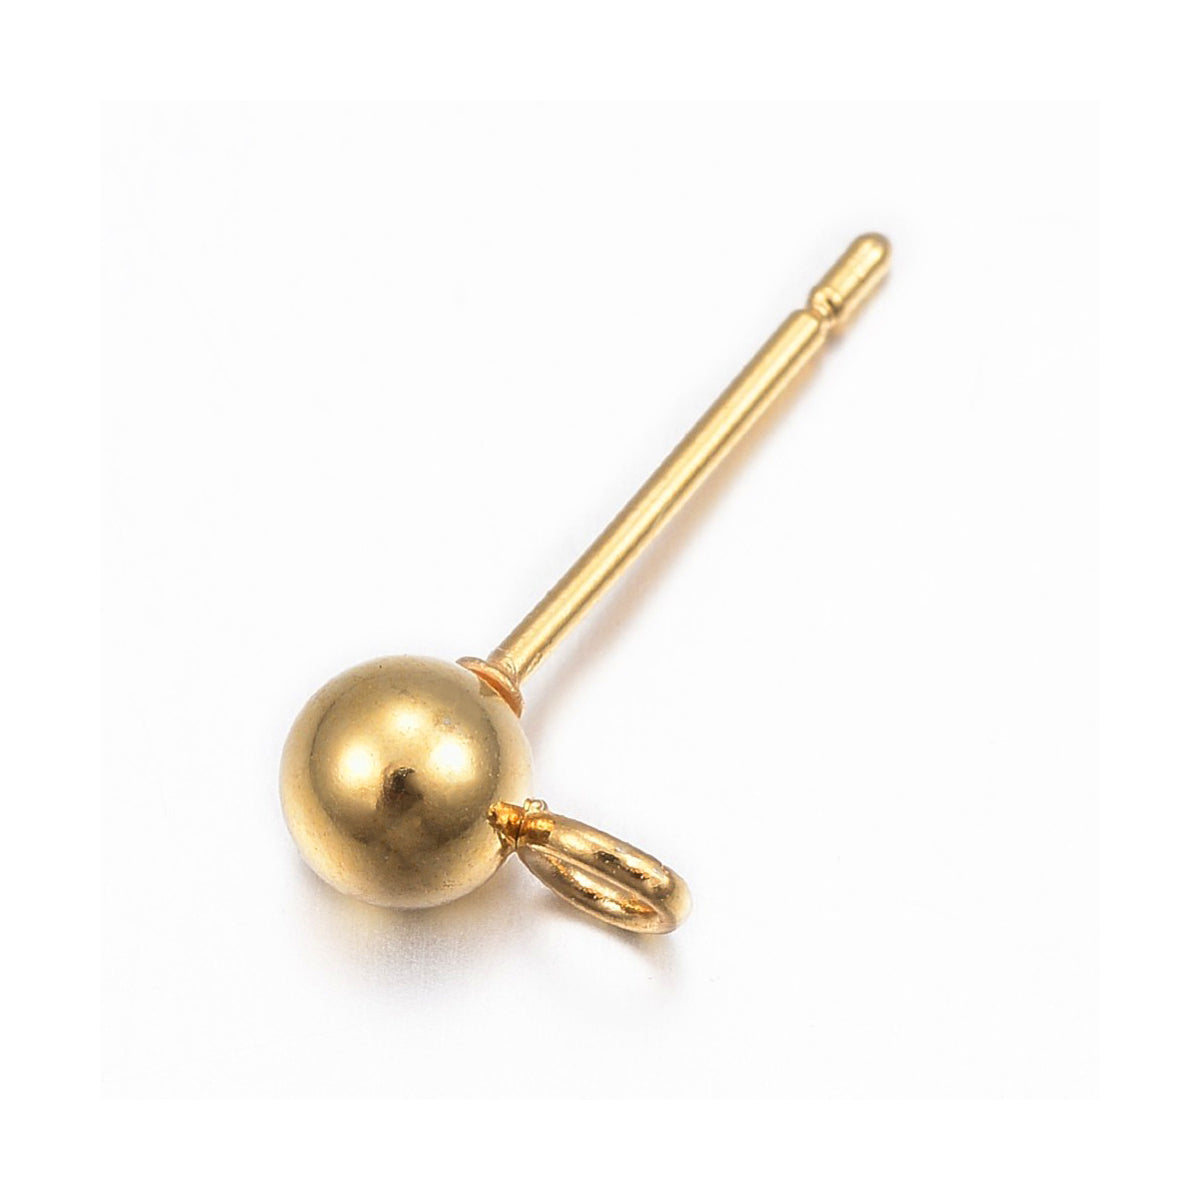 50x 304 Stainless Steel Ear Nuts, Gold Ear Locking Earring Backs for Post Stud  Earrings, Golden Ear Nuts 